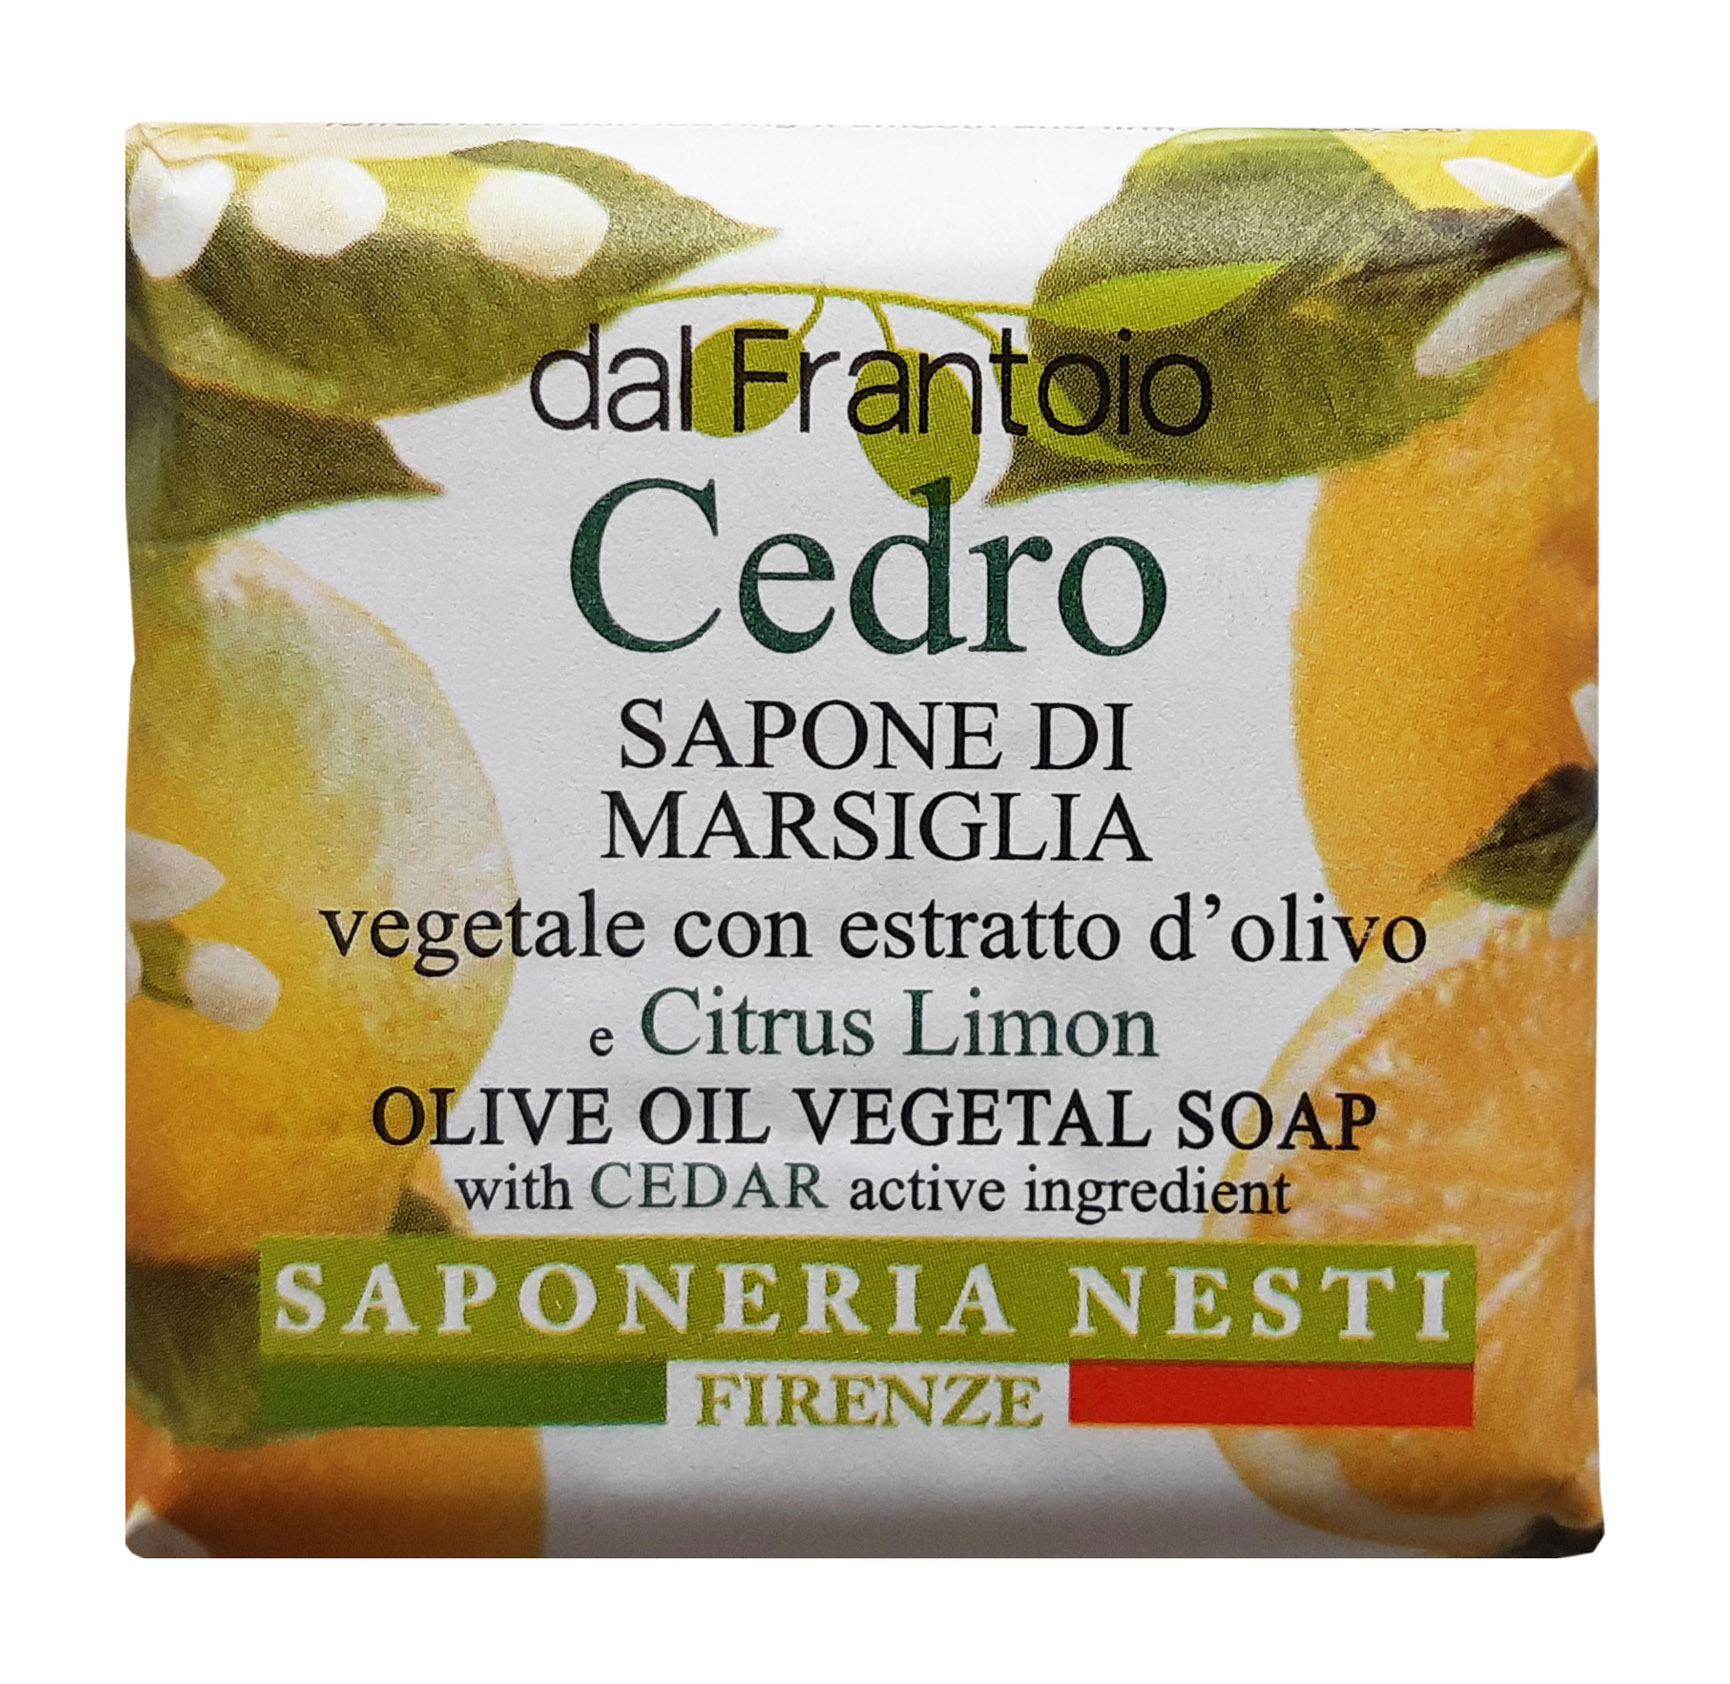 Мыло NESTI DANTE Dal Frantoio Cedro Olive Oil Vegetal Soap 100 г мыло florinda натуральное растительное vegetal soap giglio rosa 200г